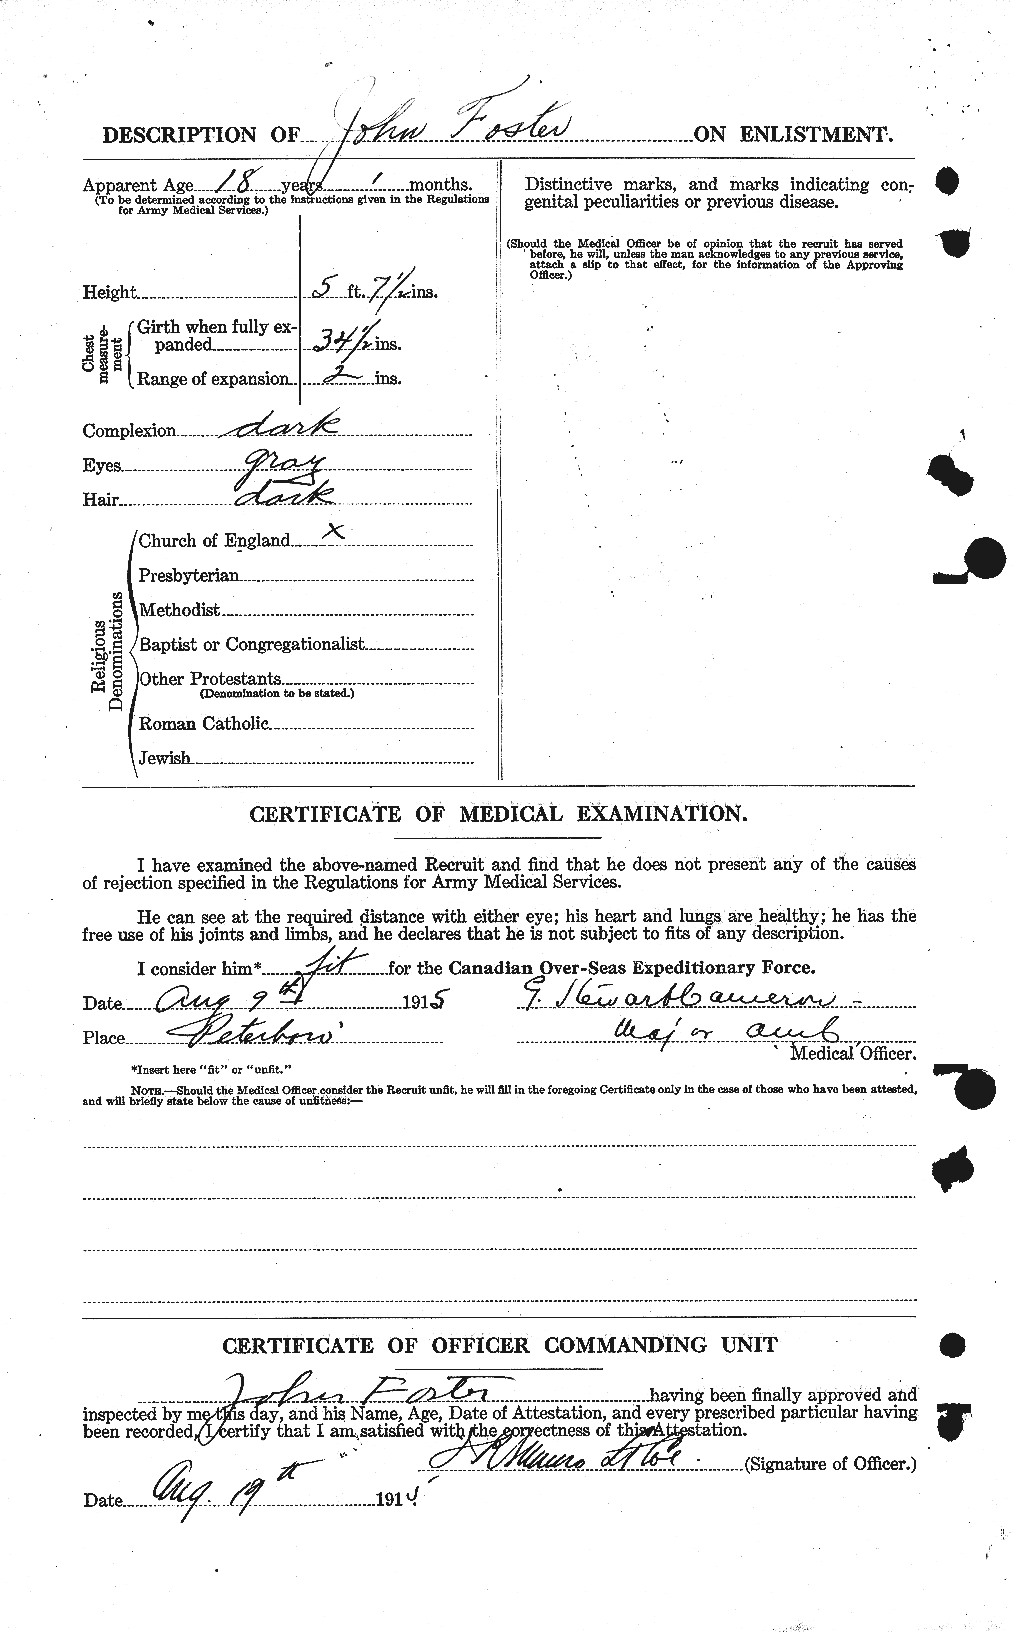 Dossiers du Personnel de la Première Guerre mondiale - CEC 333323b